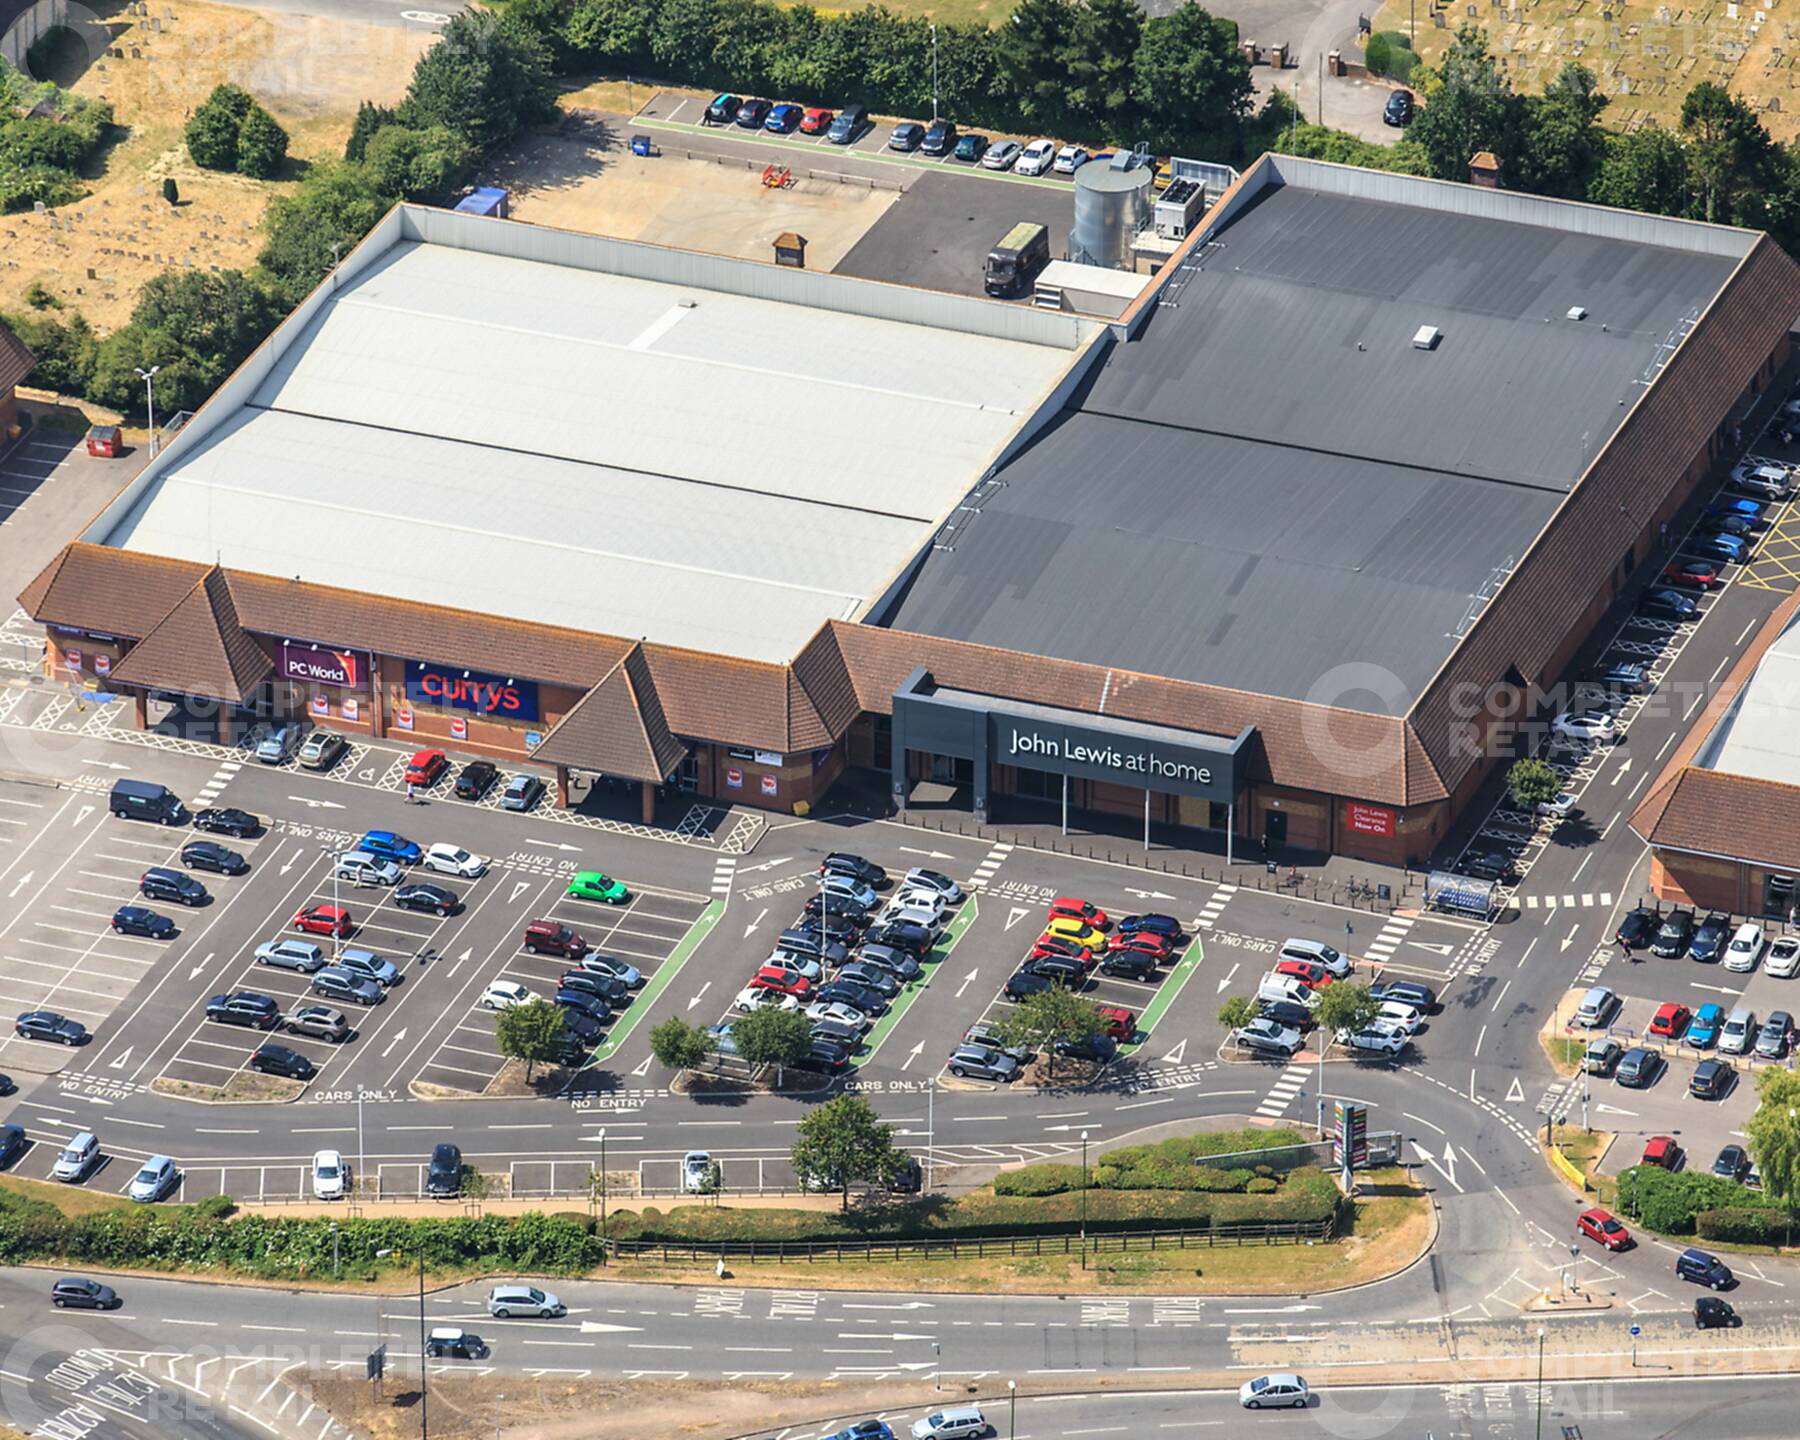 Chichester Retail Park